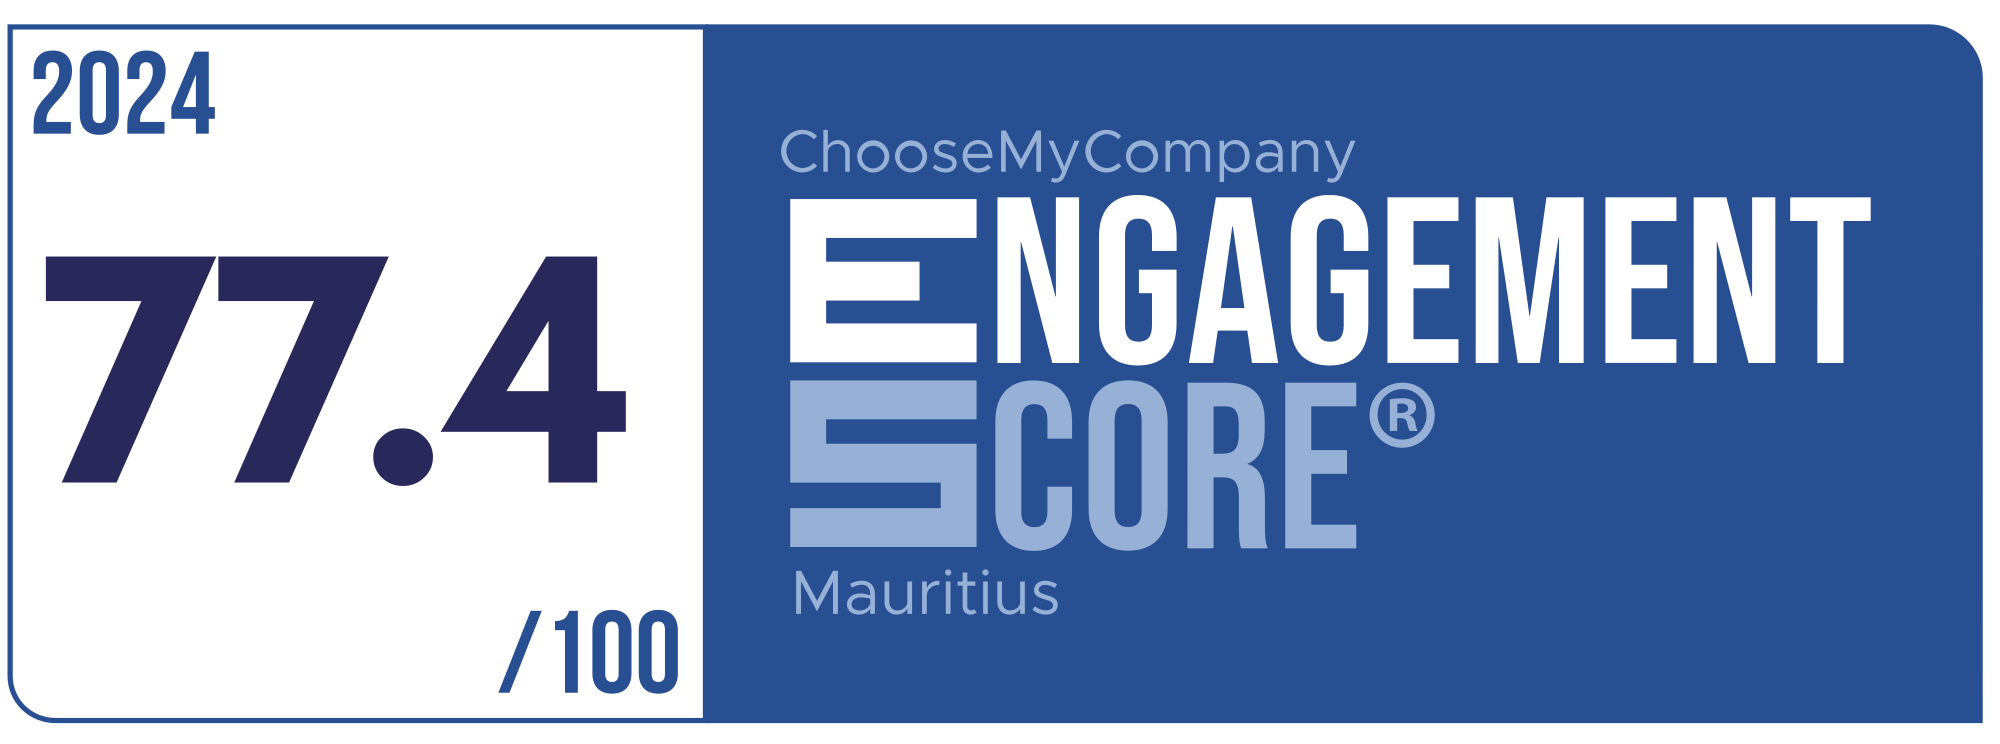 Label Engagement Score 2024 Mauritius